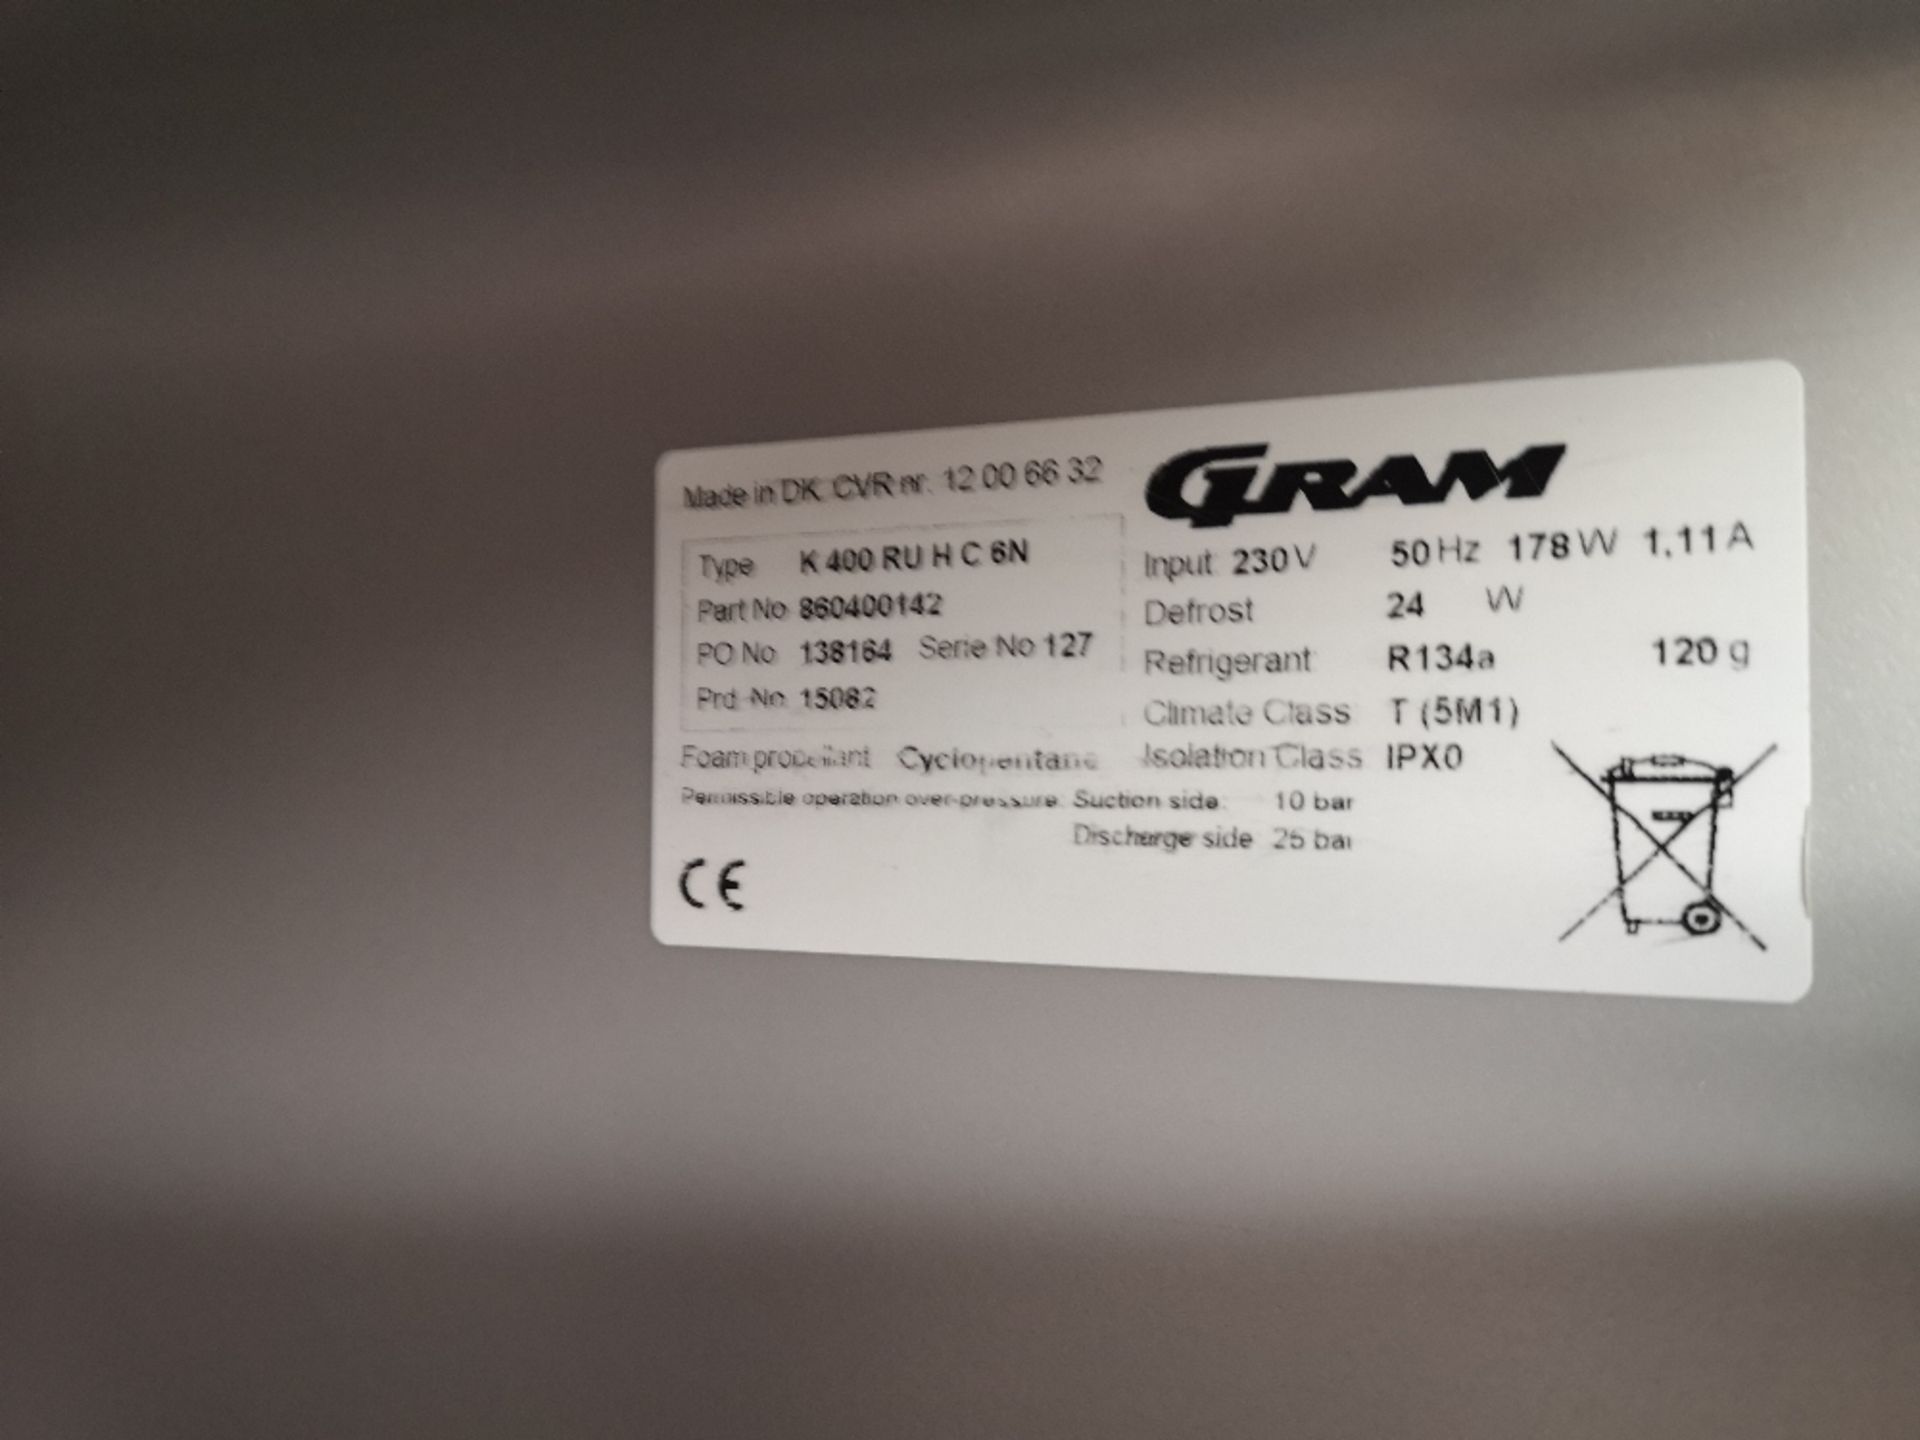 Gram K400 Upright Stainless Steel Fridge - Image 2 of 2